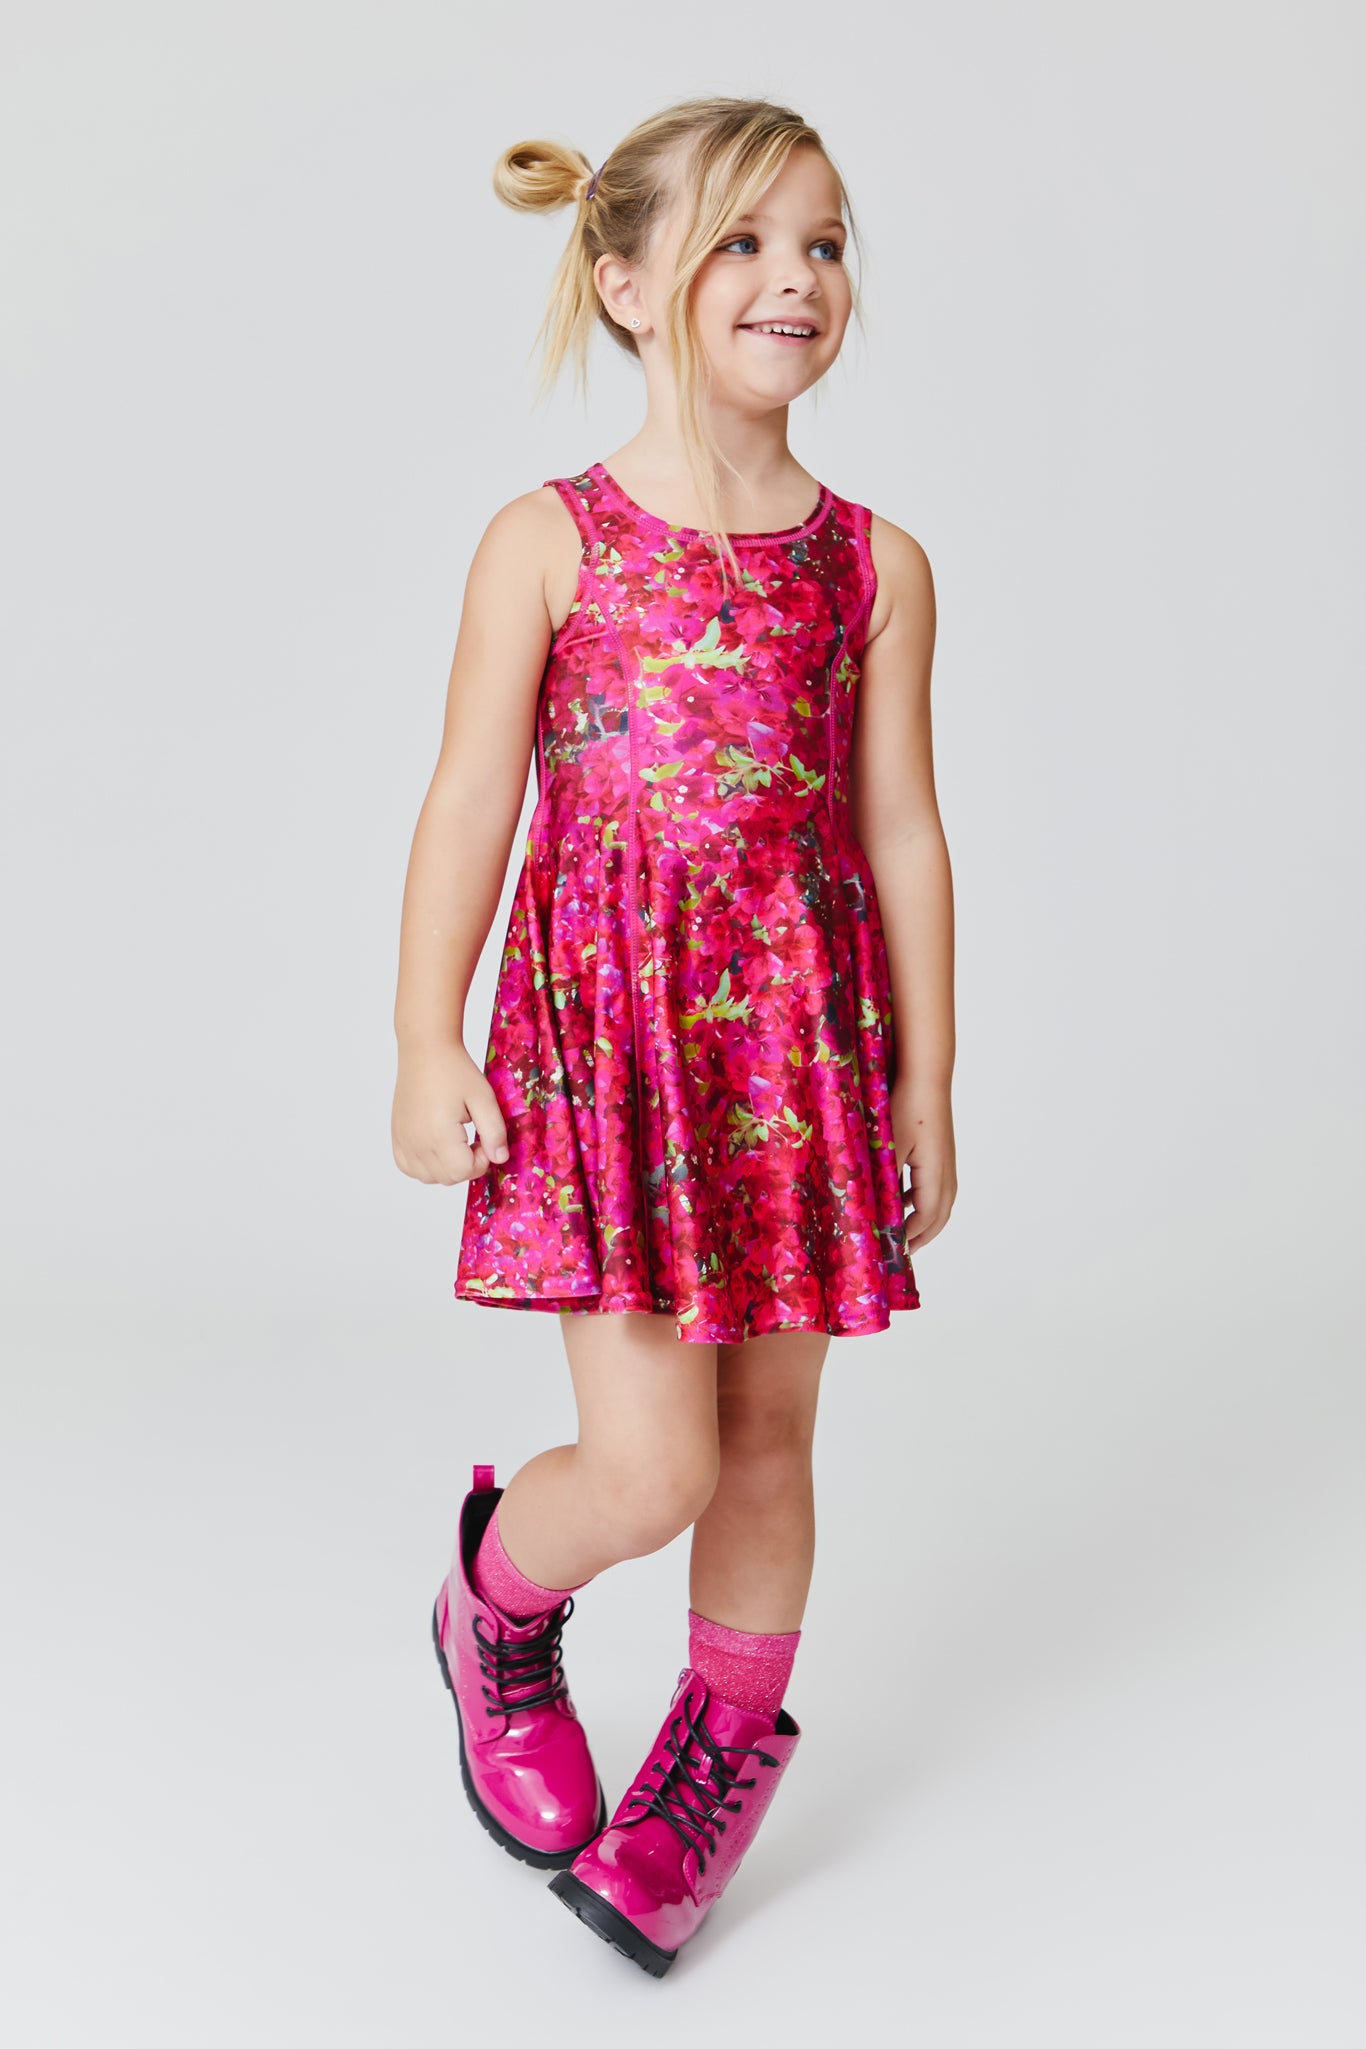 Toddler Kids Girls Outfits Off-shoulder Floral Crop Top + Skater Skirts  Summer Clothes Set